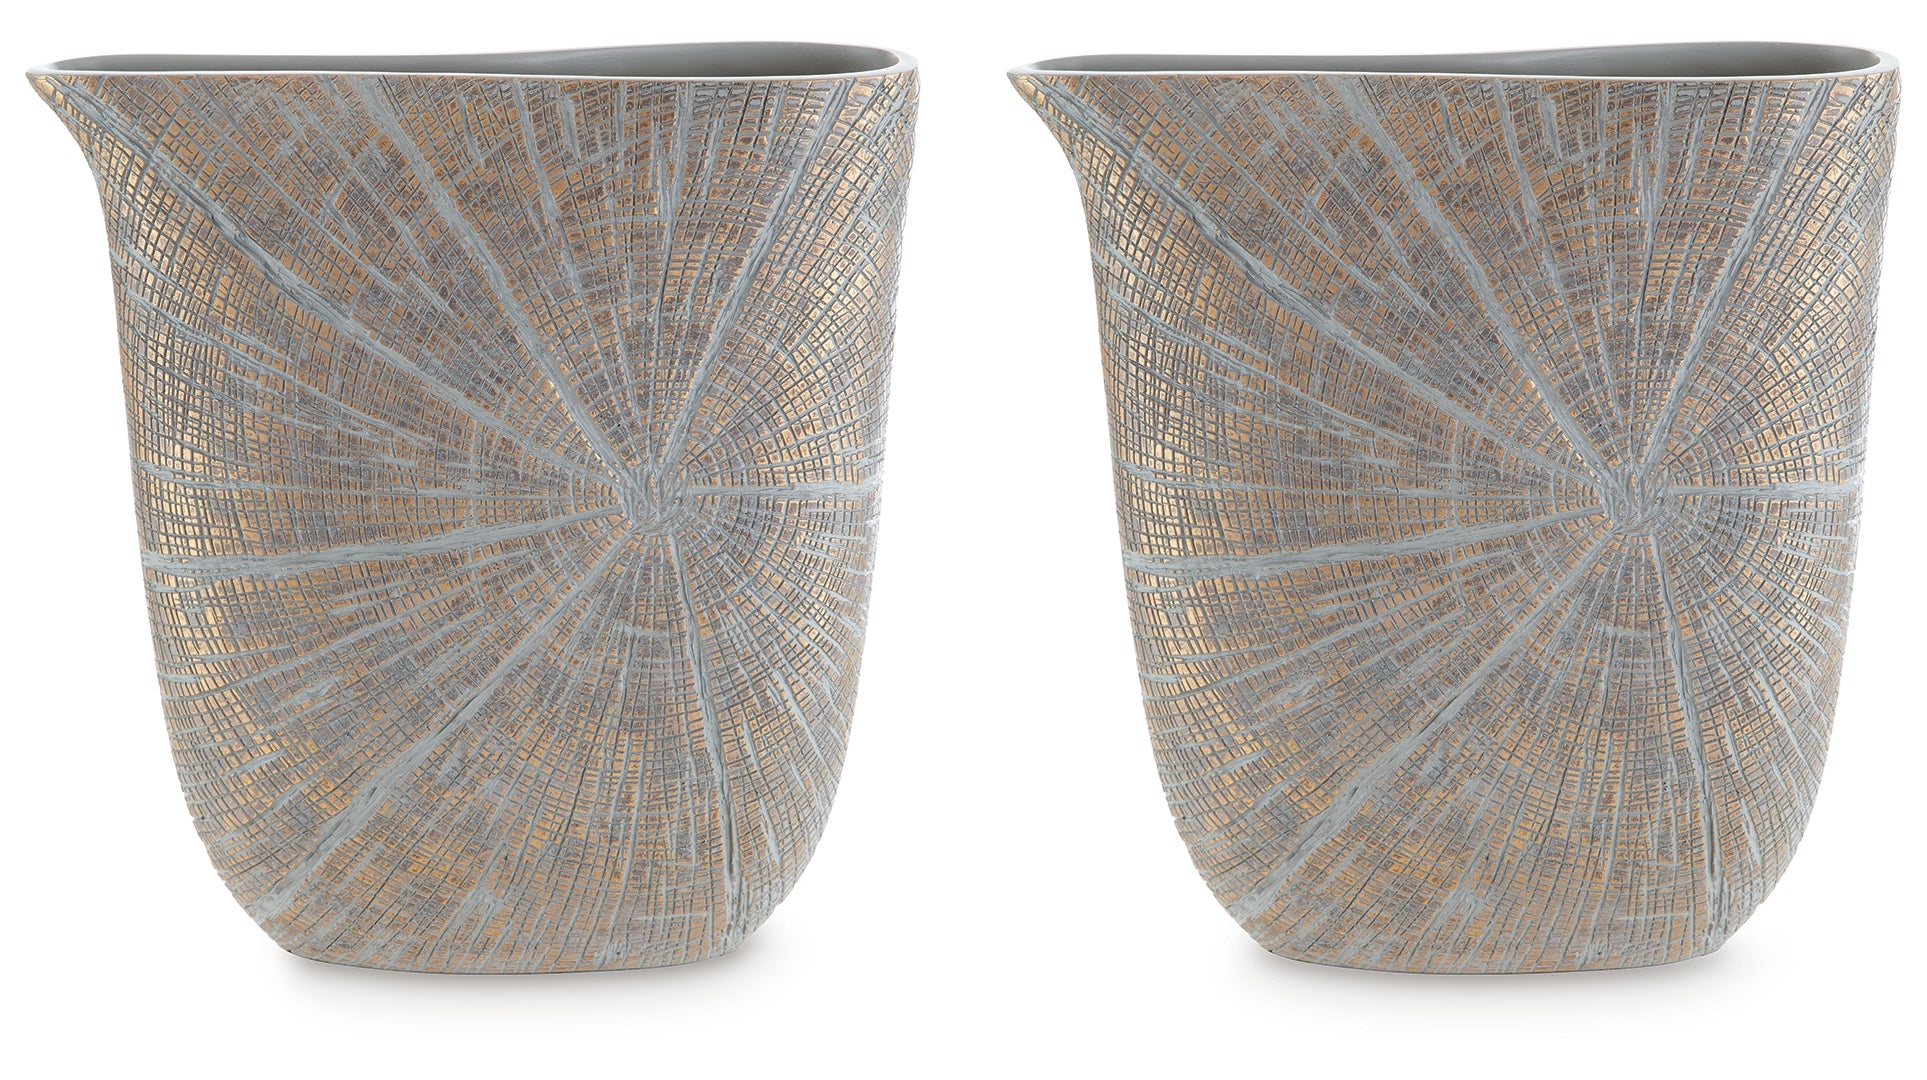 Ardenley Vase (Set of 2)